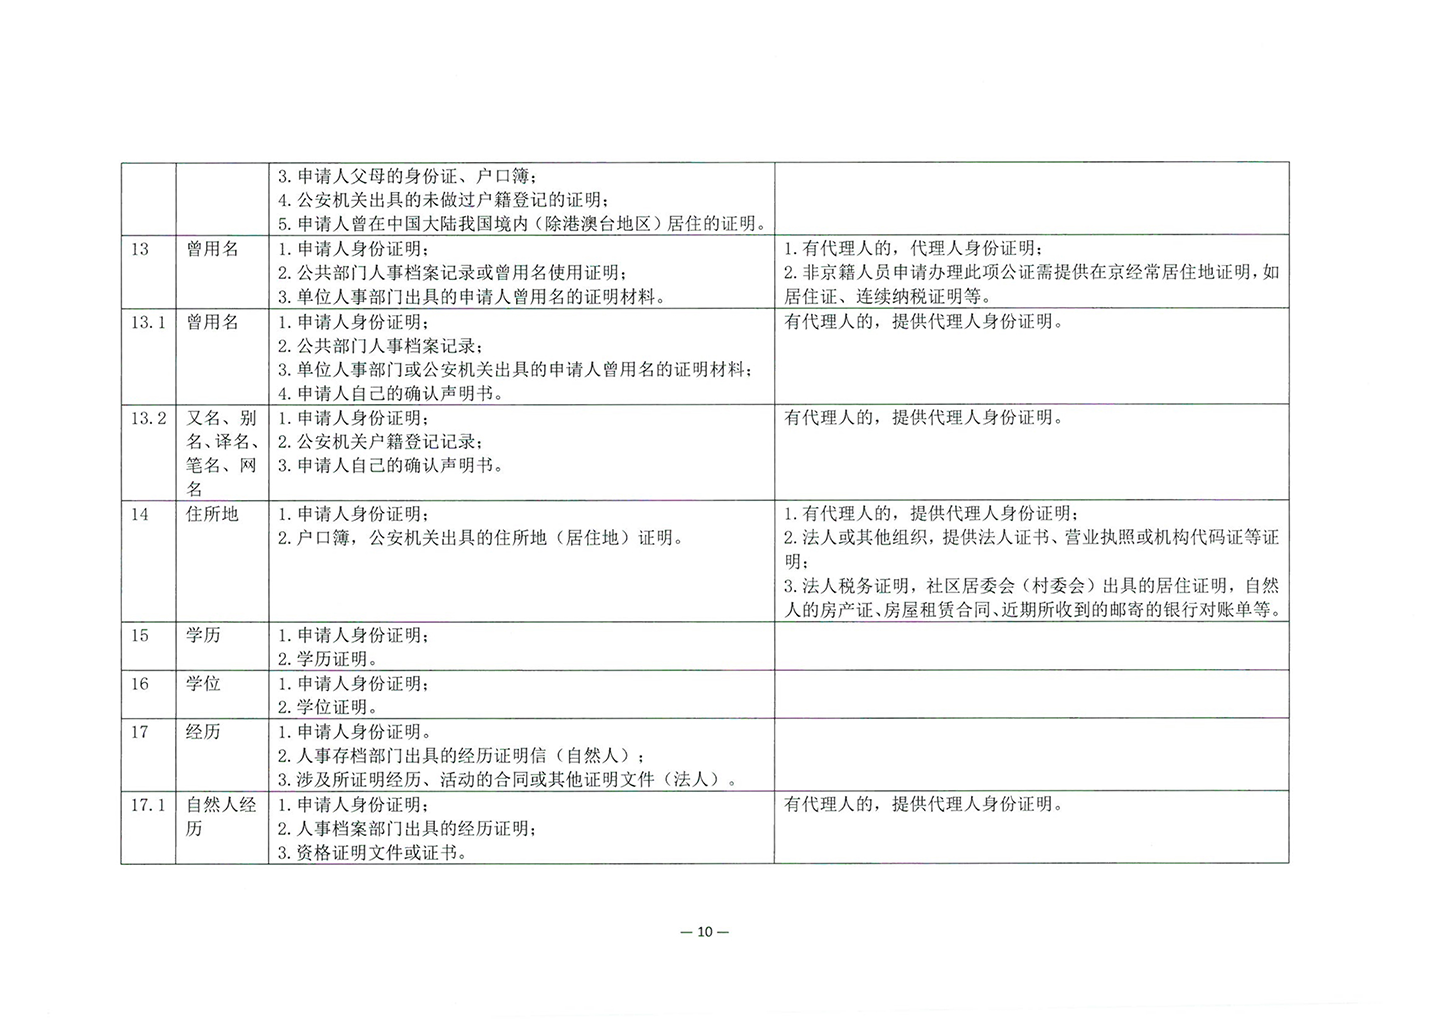 010417243466_03北京市公证协会关于印发《公证机构受理公证事项事务申请证明材料清单》的通知_12